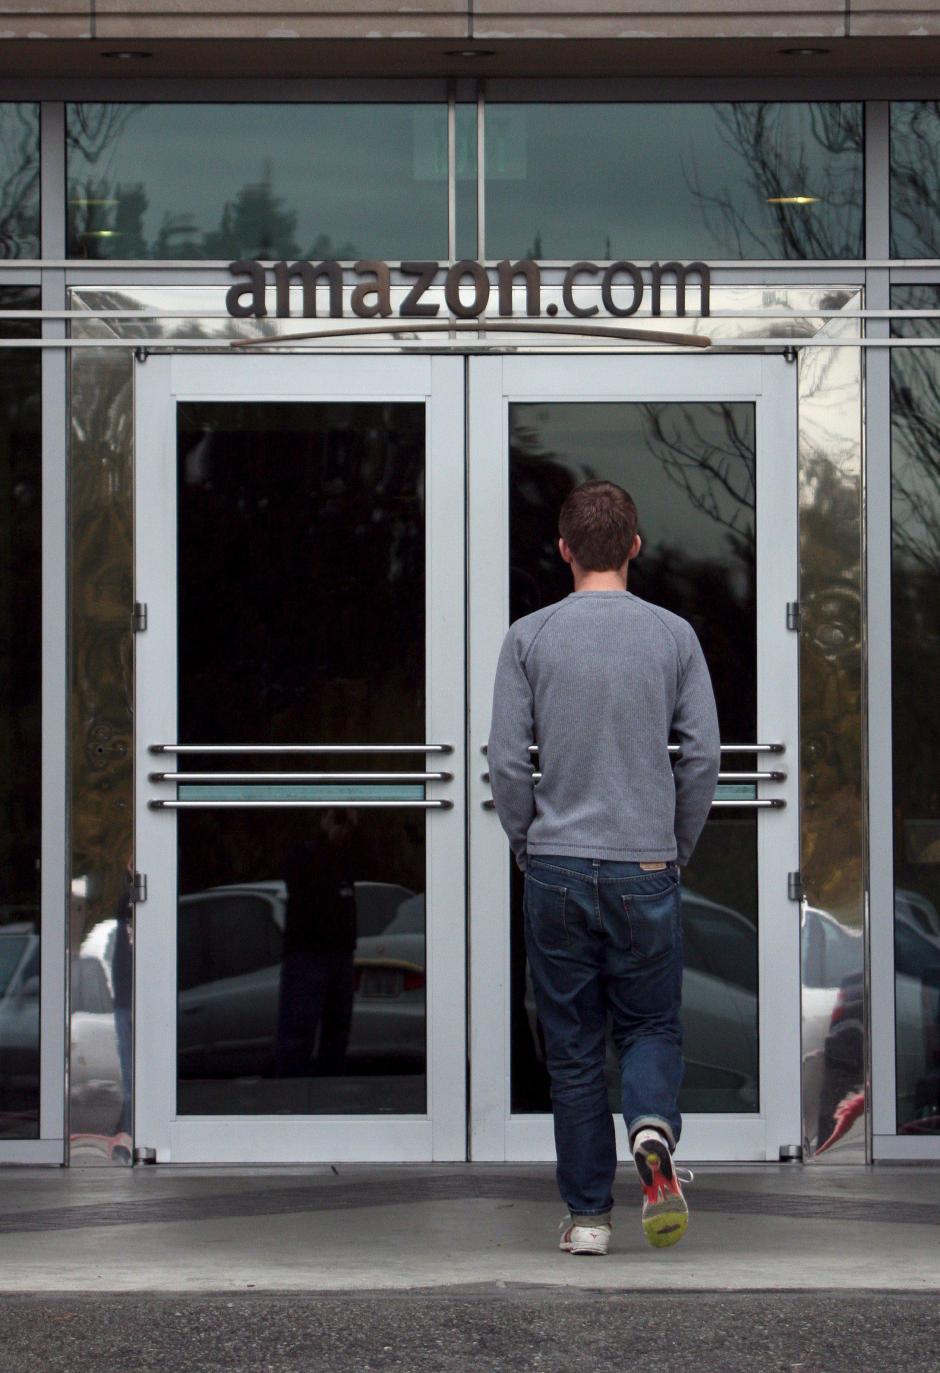 Amazon ha negado que actualmente tengan previsto lanzar su propio canal de televisión de pago en internet o que esté pensando en comprar las licencias de programas de televisión, a pesar de lo que indican las fuentes del periódico. (Foto: EFE/Archivo)